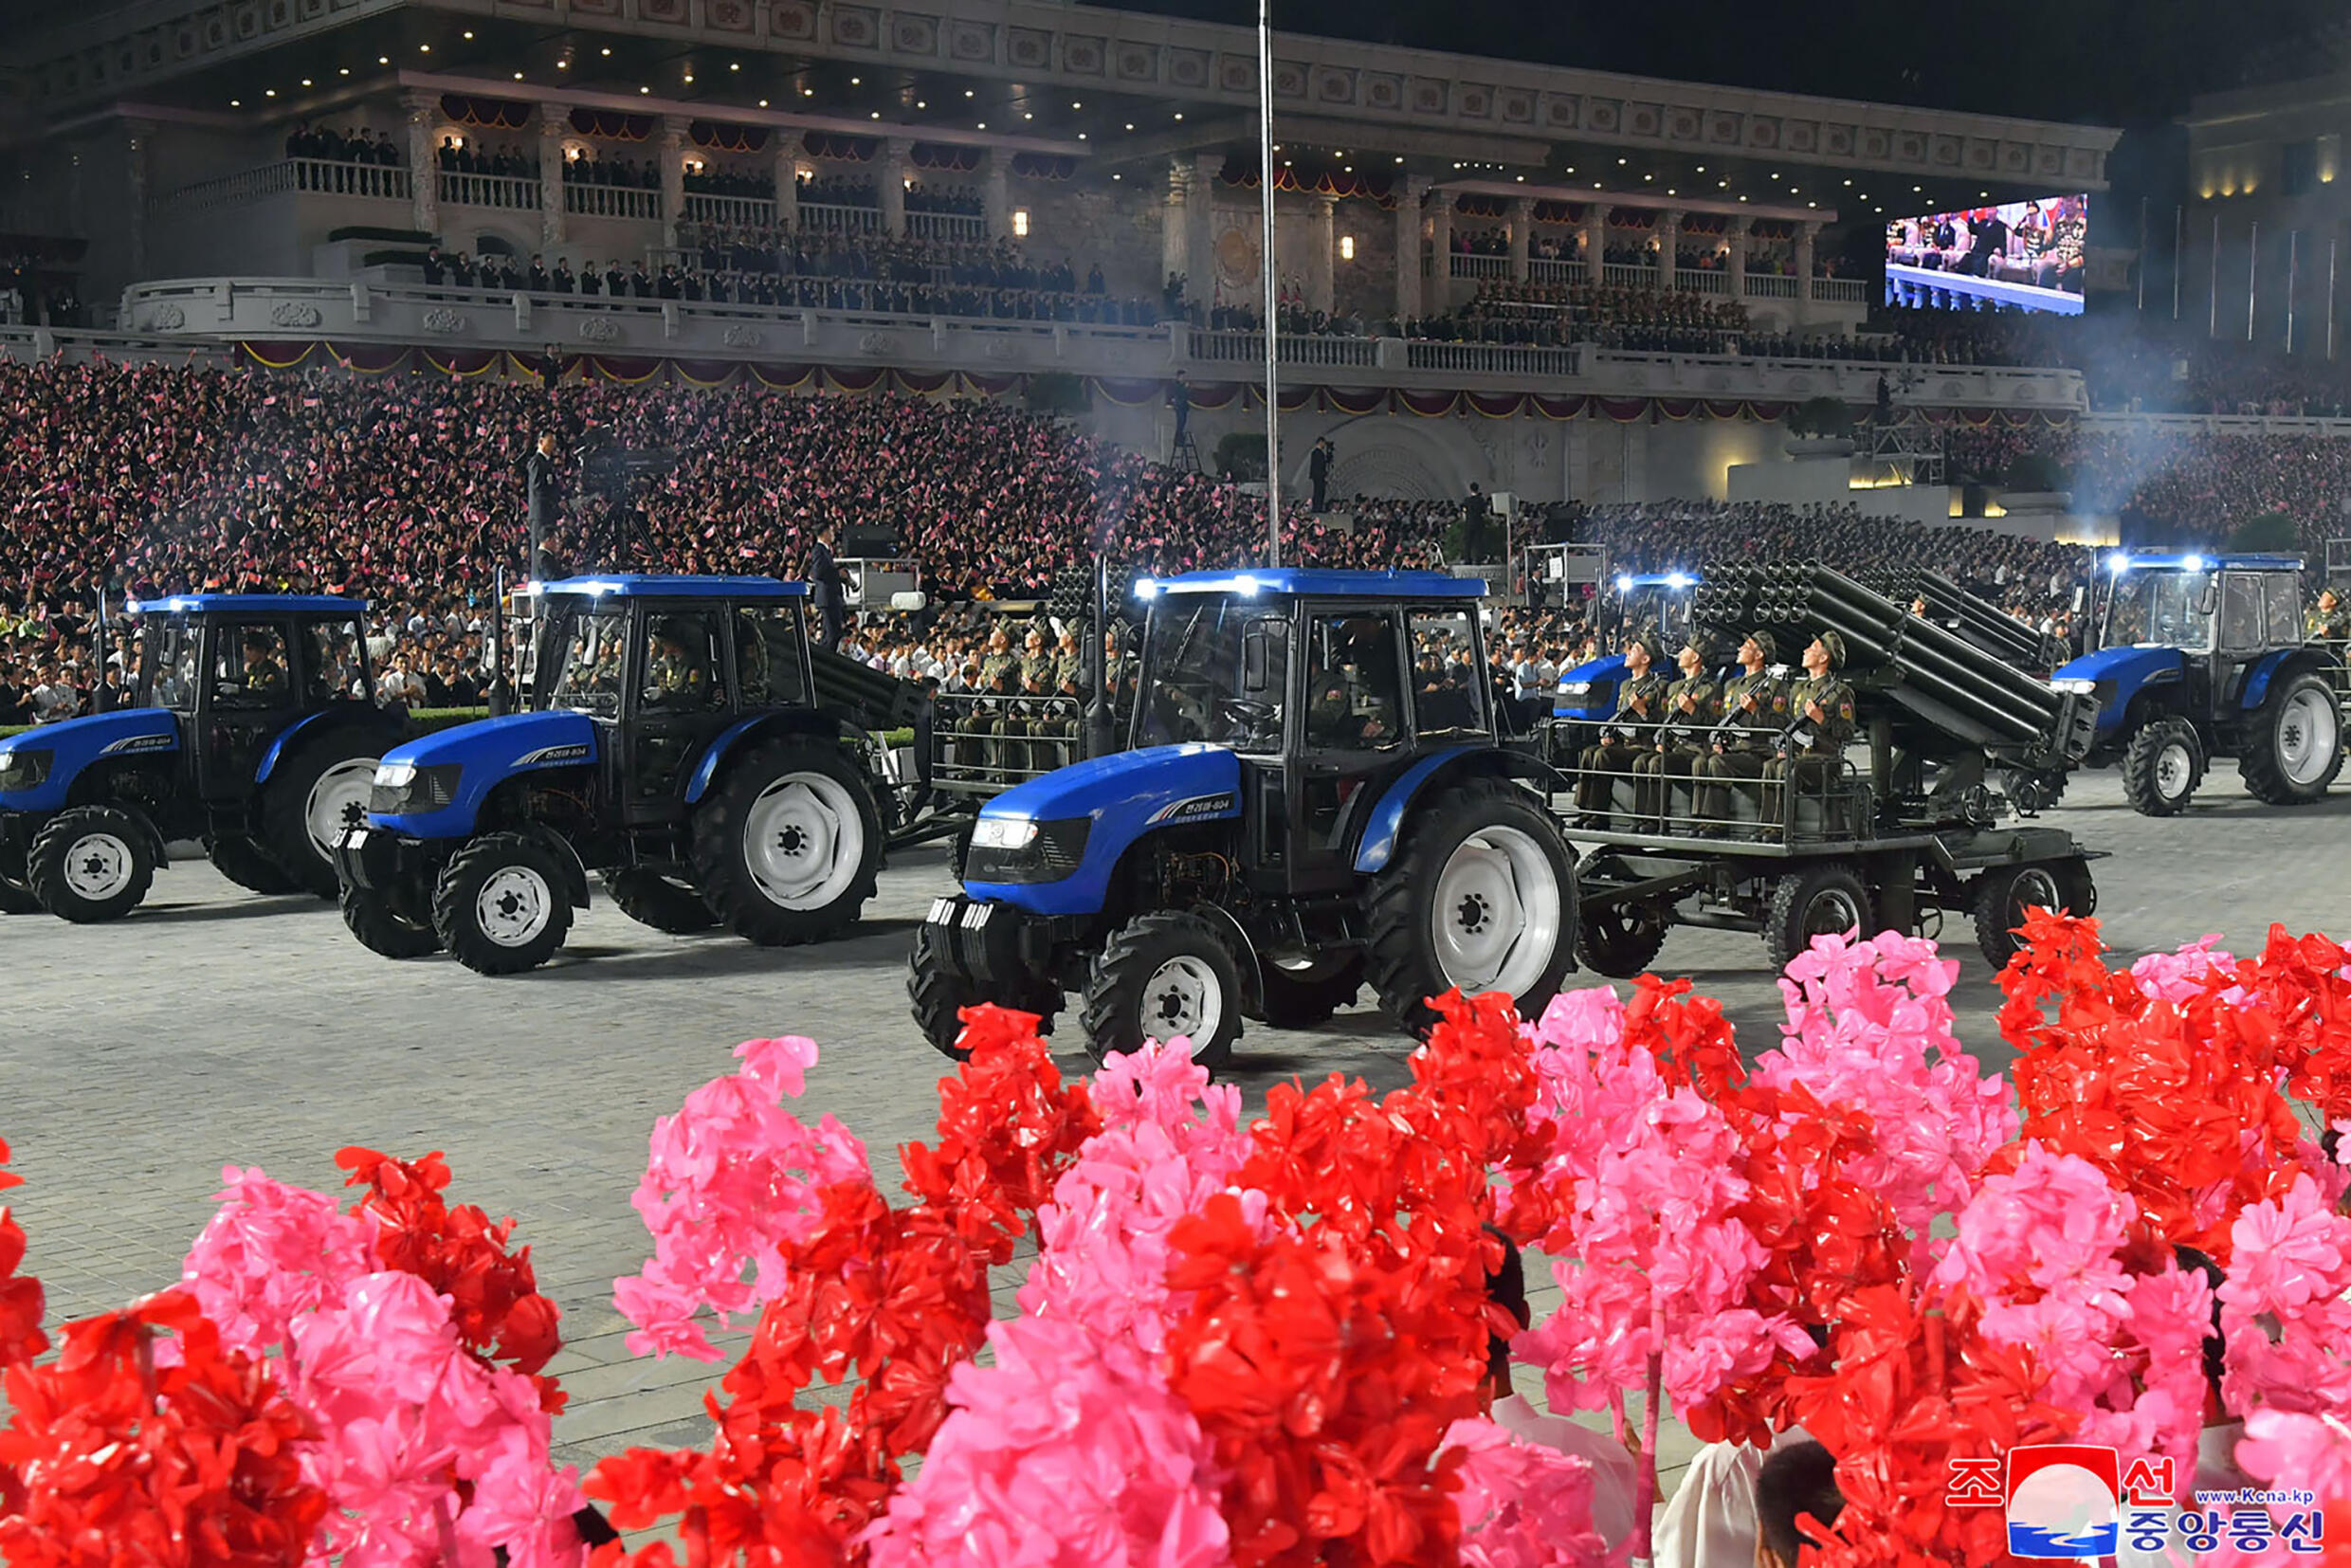 Bilder in staatlichen Medien zeigten uniformierte paramilitärische Brigaden, darunter einige auf Traktoren.